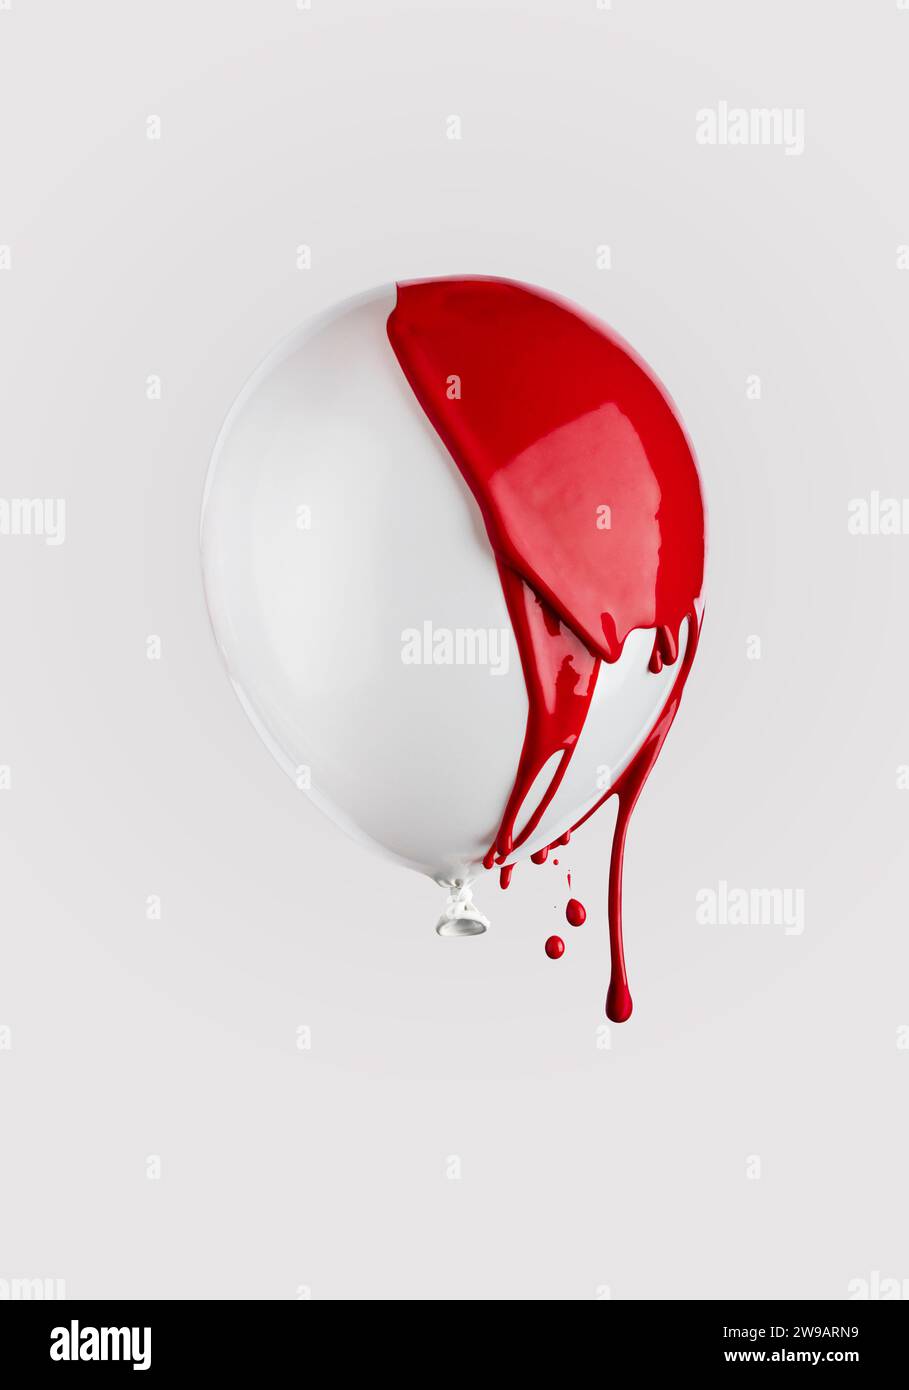 Gocce di vernice rossa su un palloncino bianco che galleggia nell'aria. Design minimalista e alla moda. Foto Stock